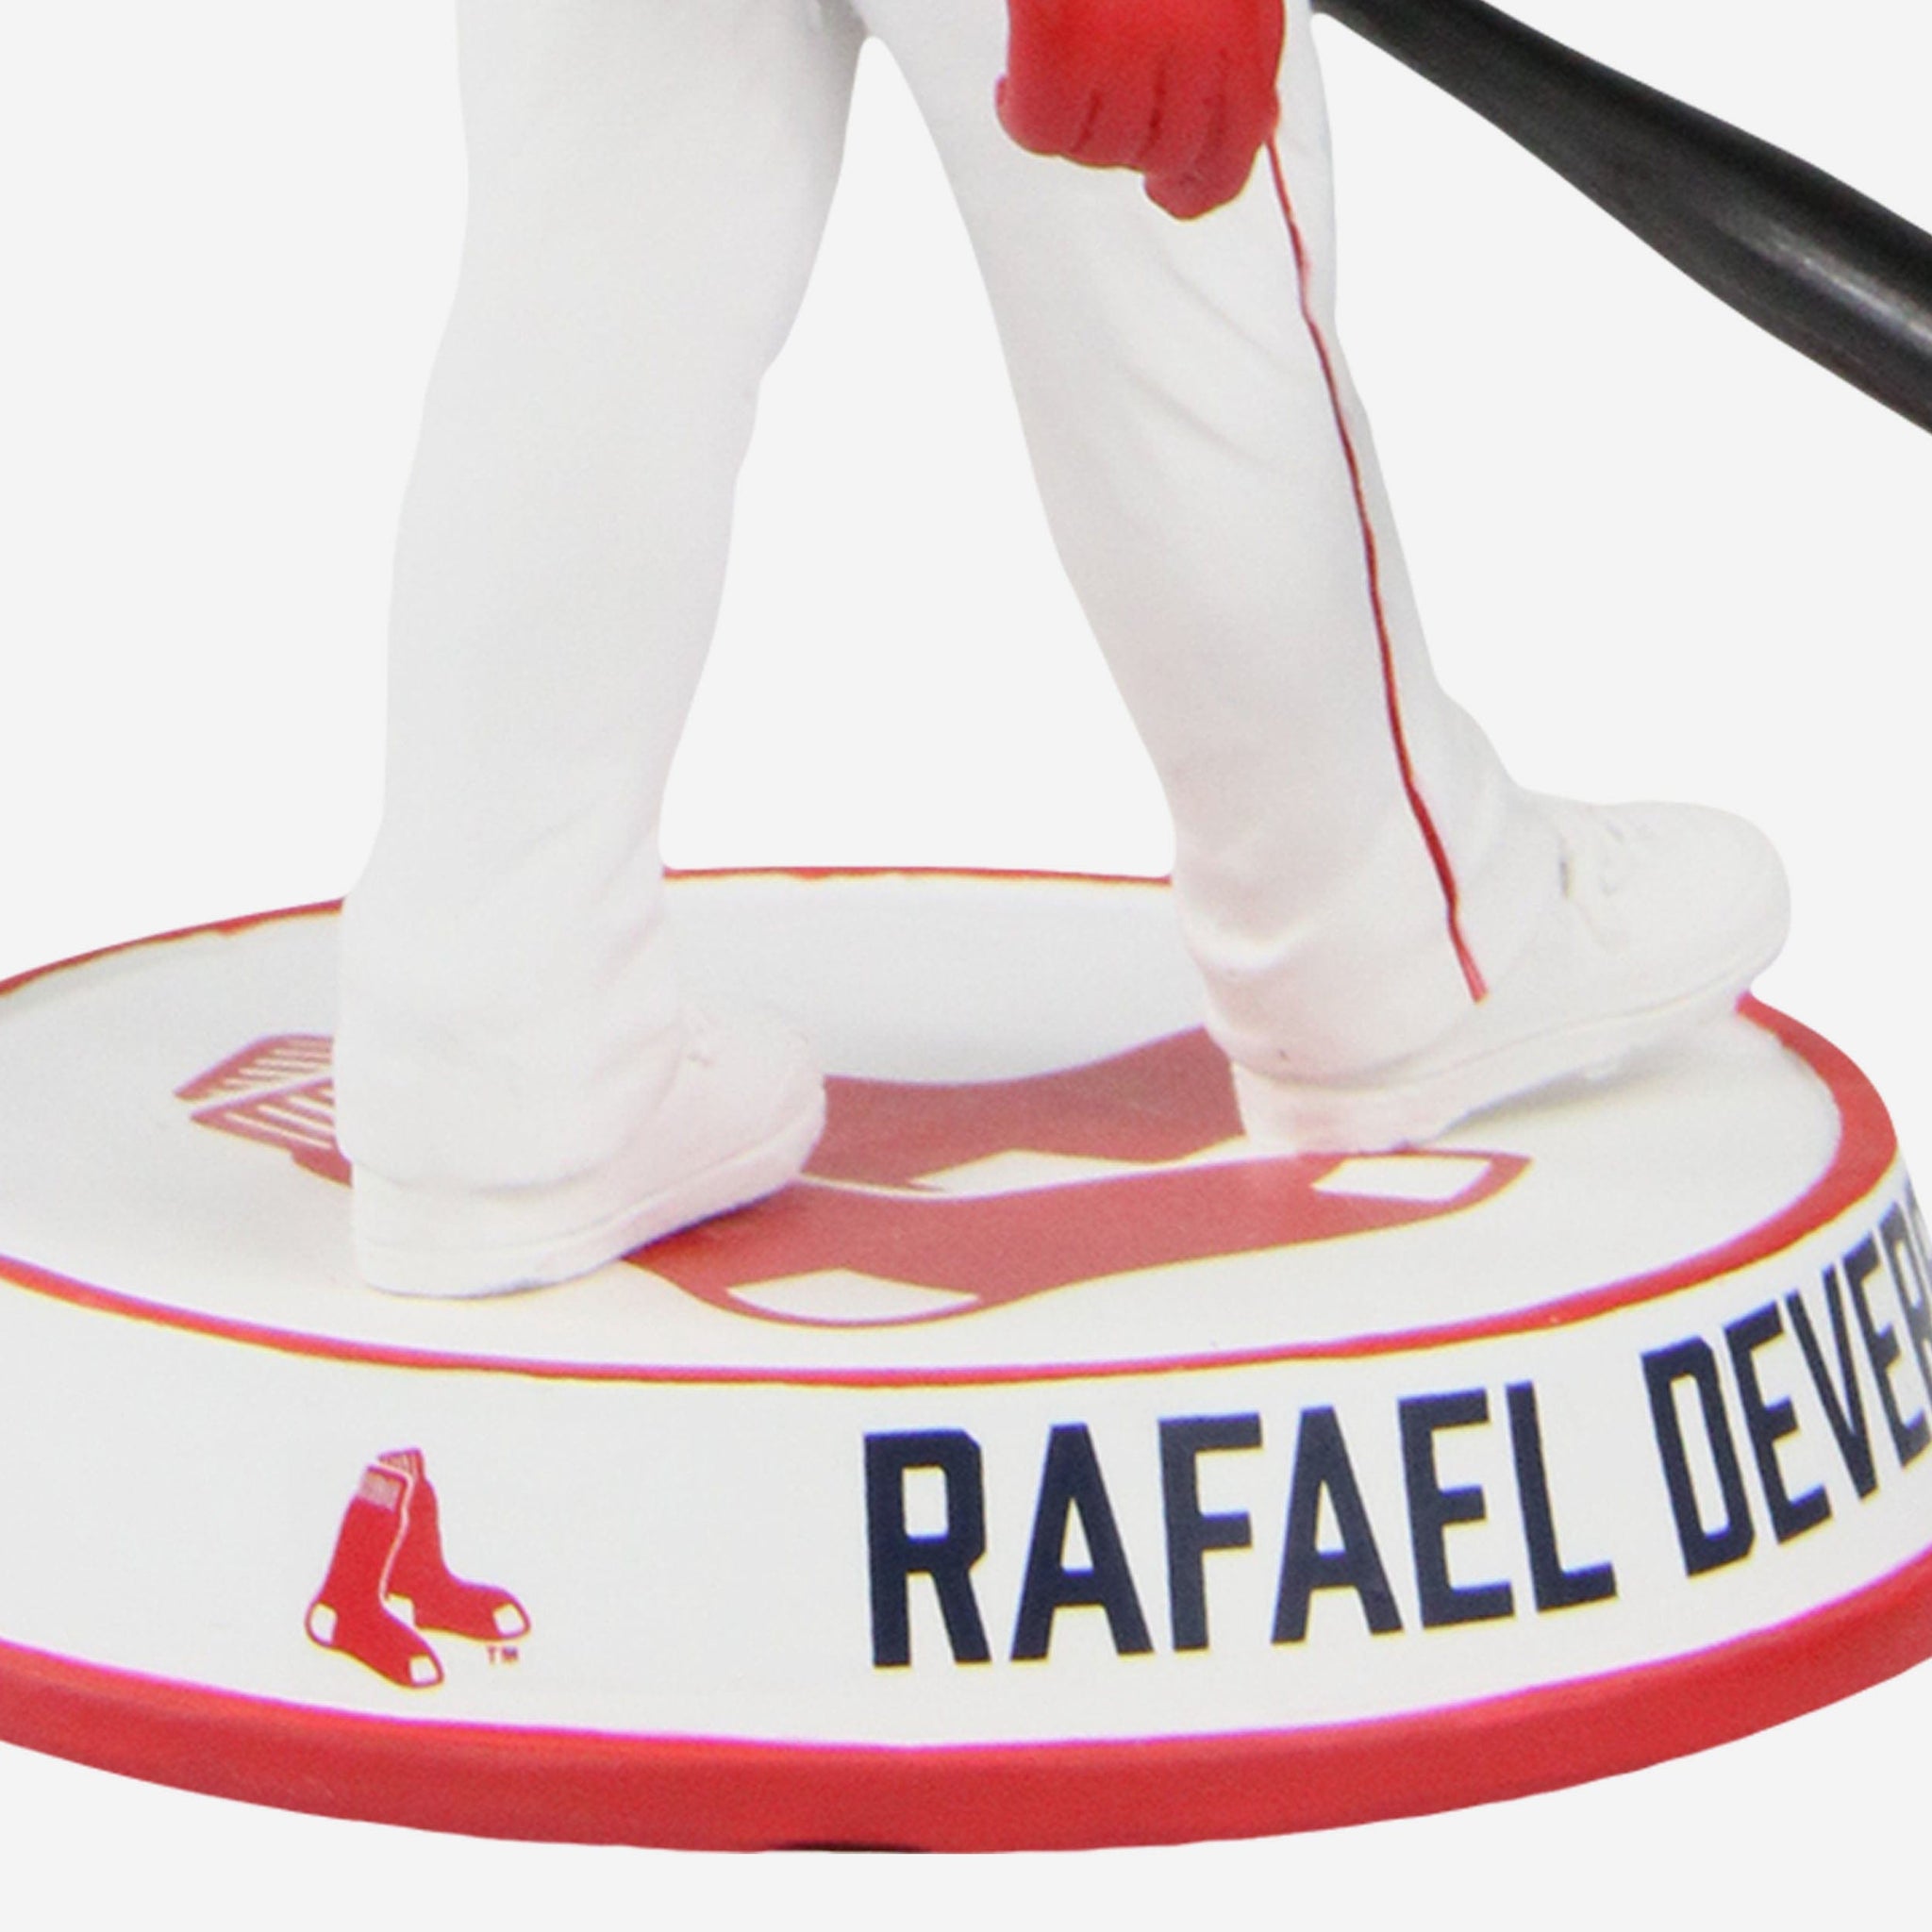 Rafael Devers: Caricature, Hoodie / Extra Large - MLB - Sports Fan Gear | breakingt